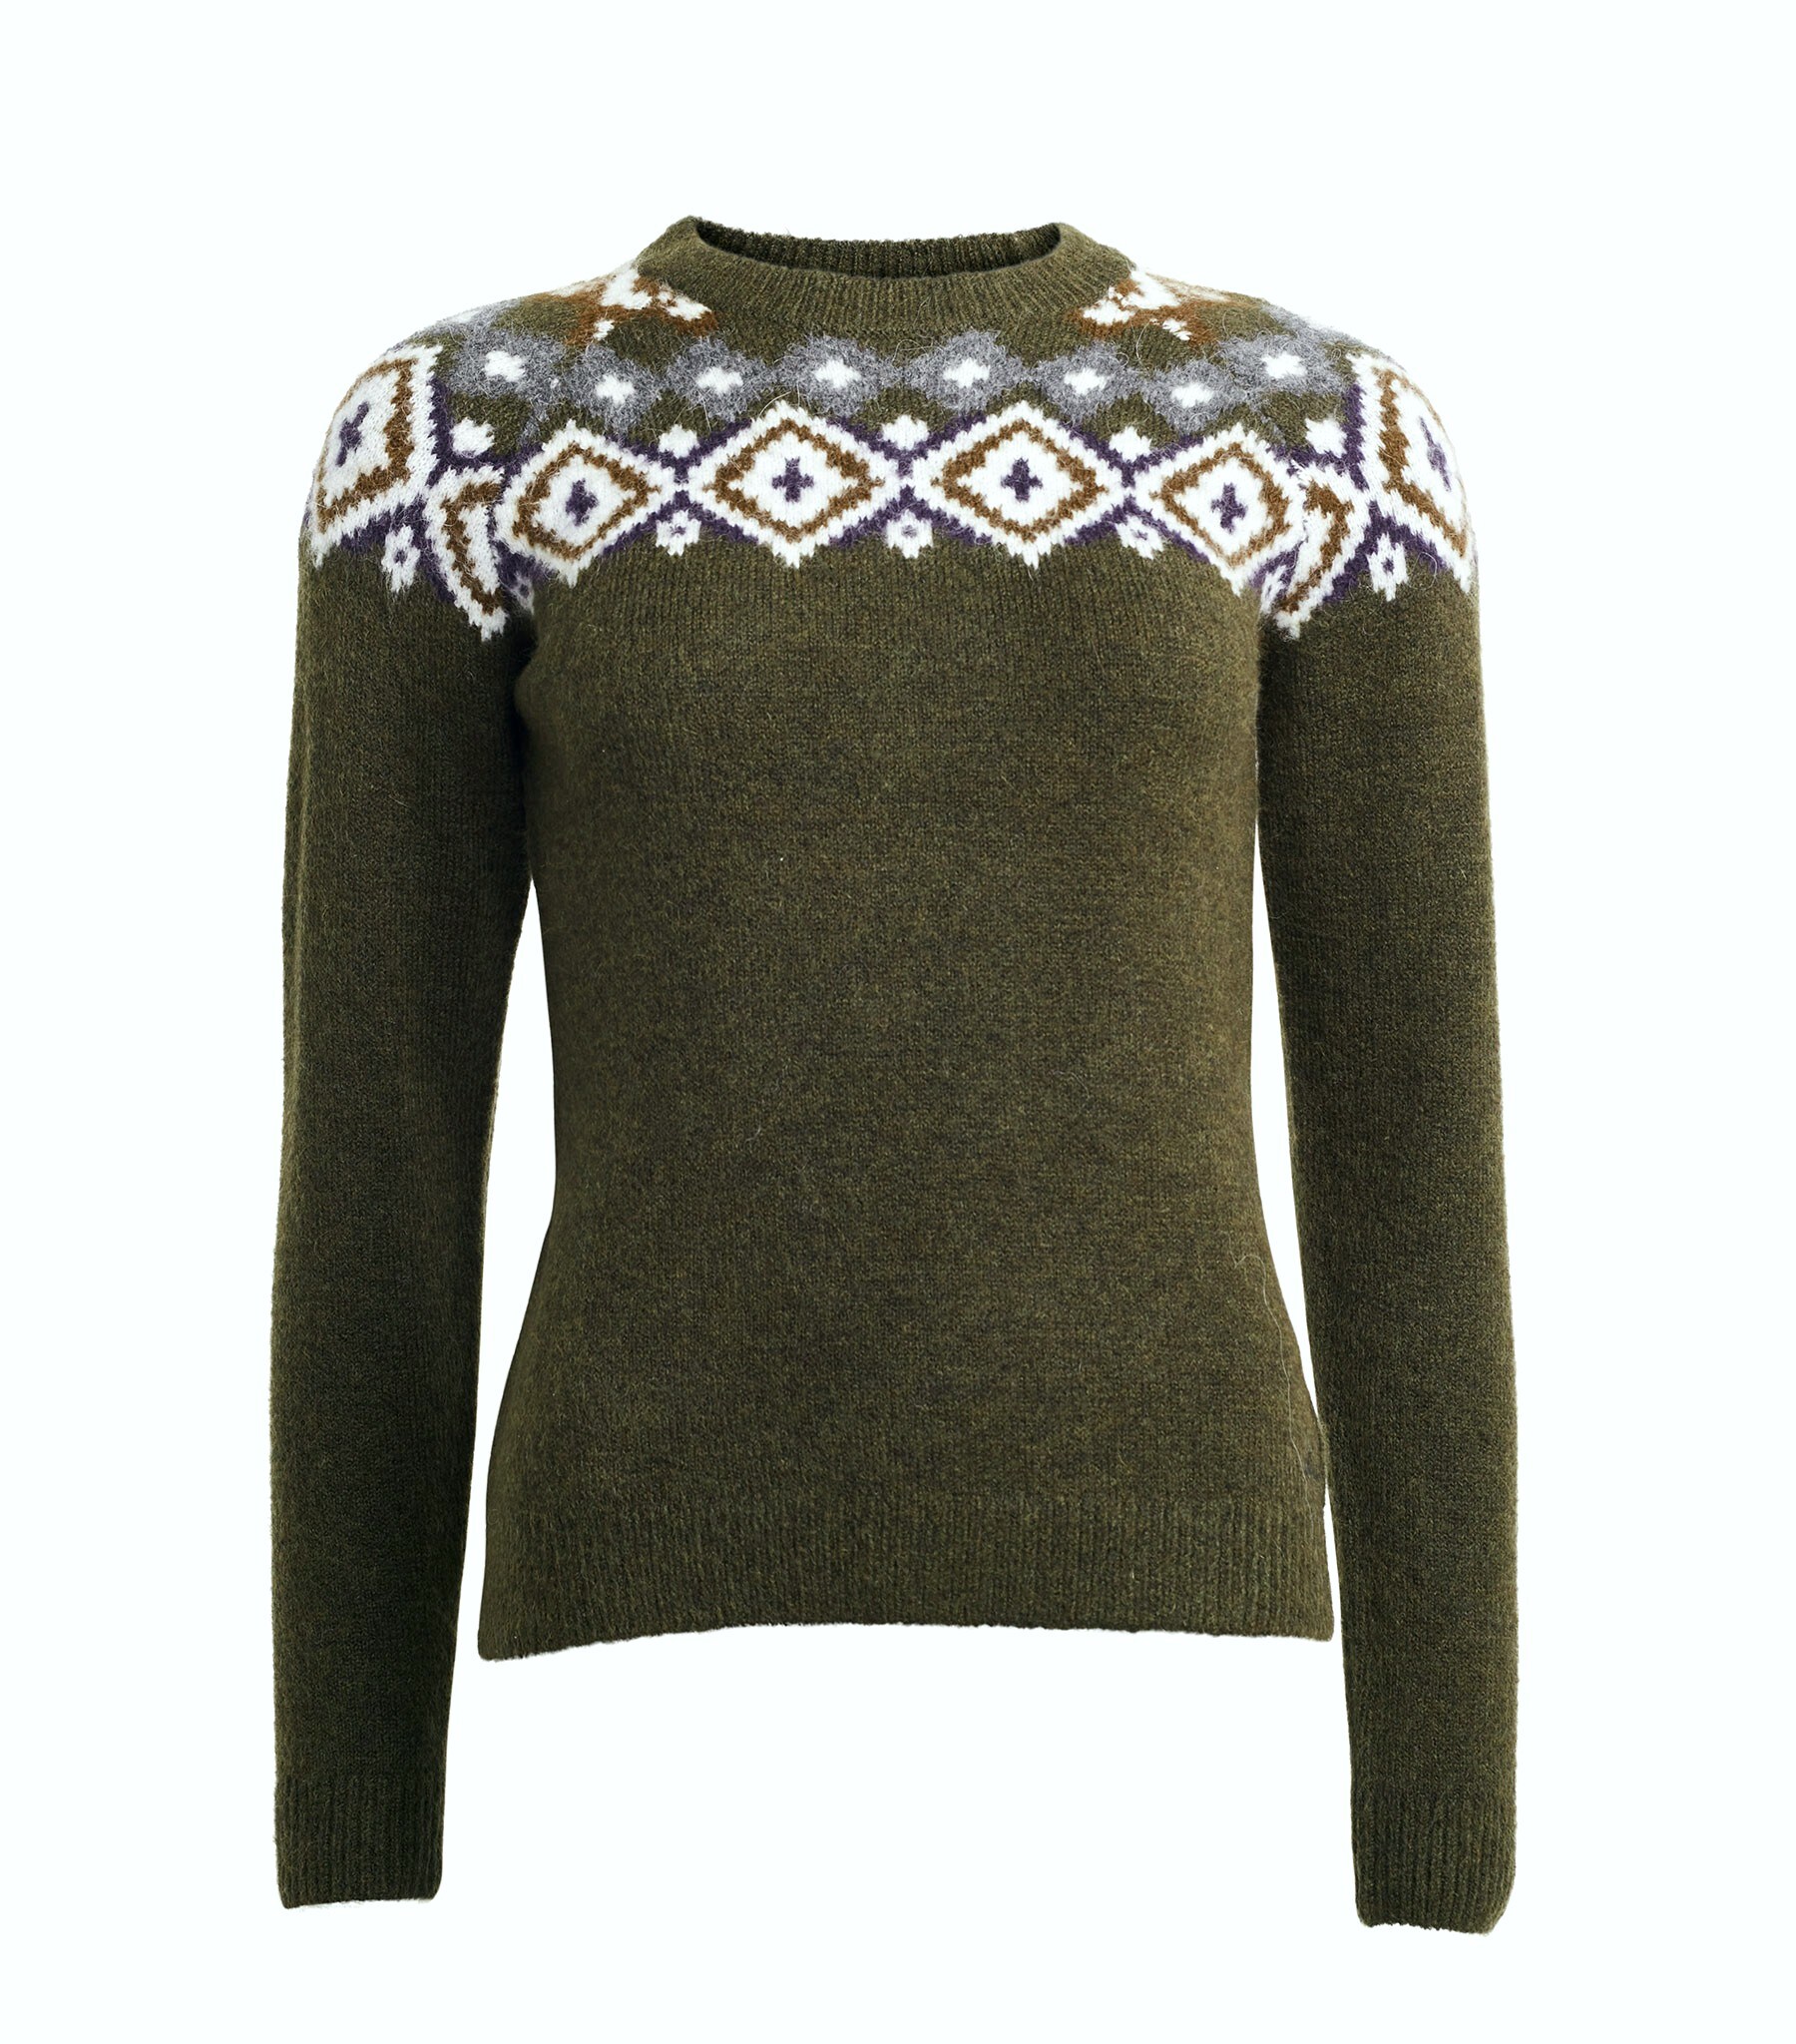 KLsence Knitted Sweater - Green Black Ink